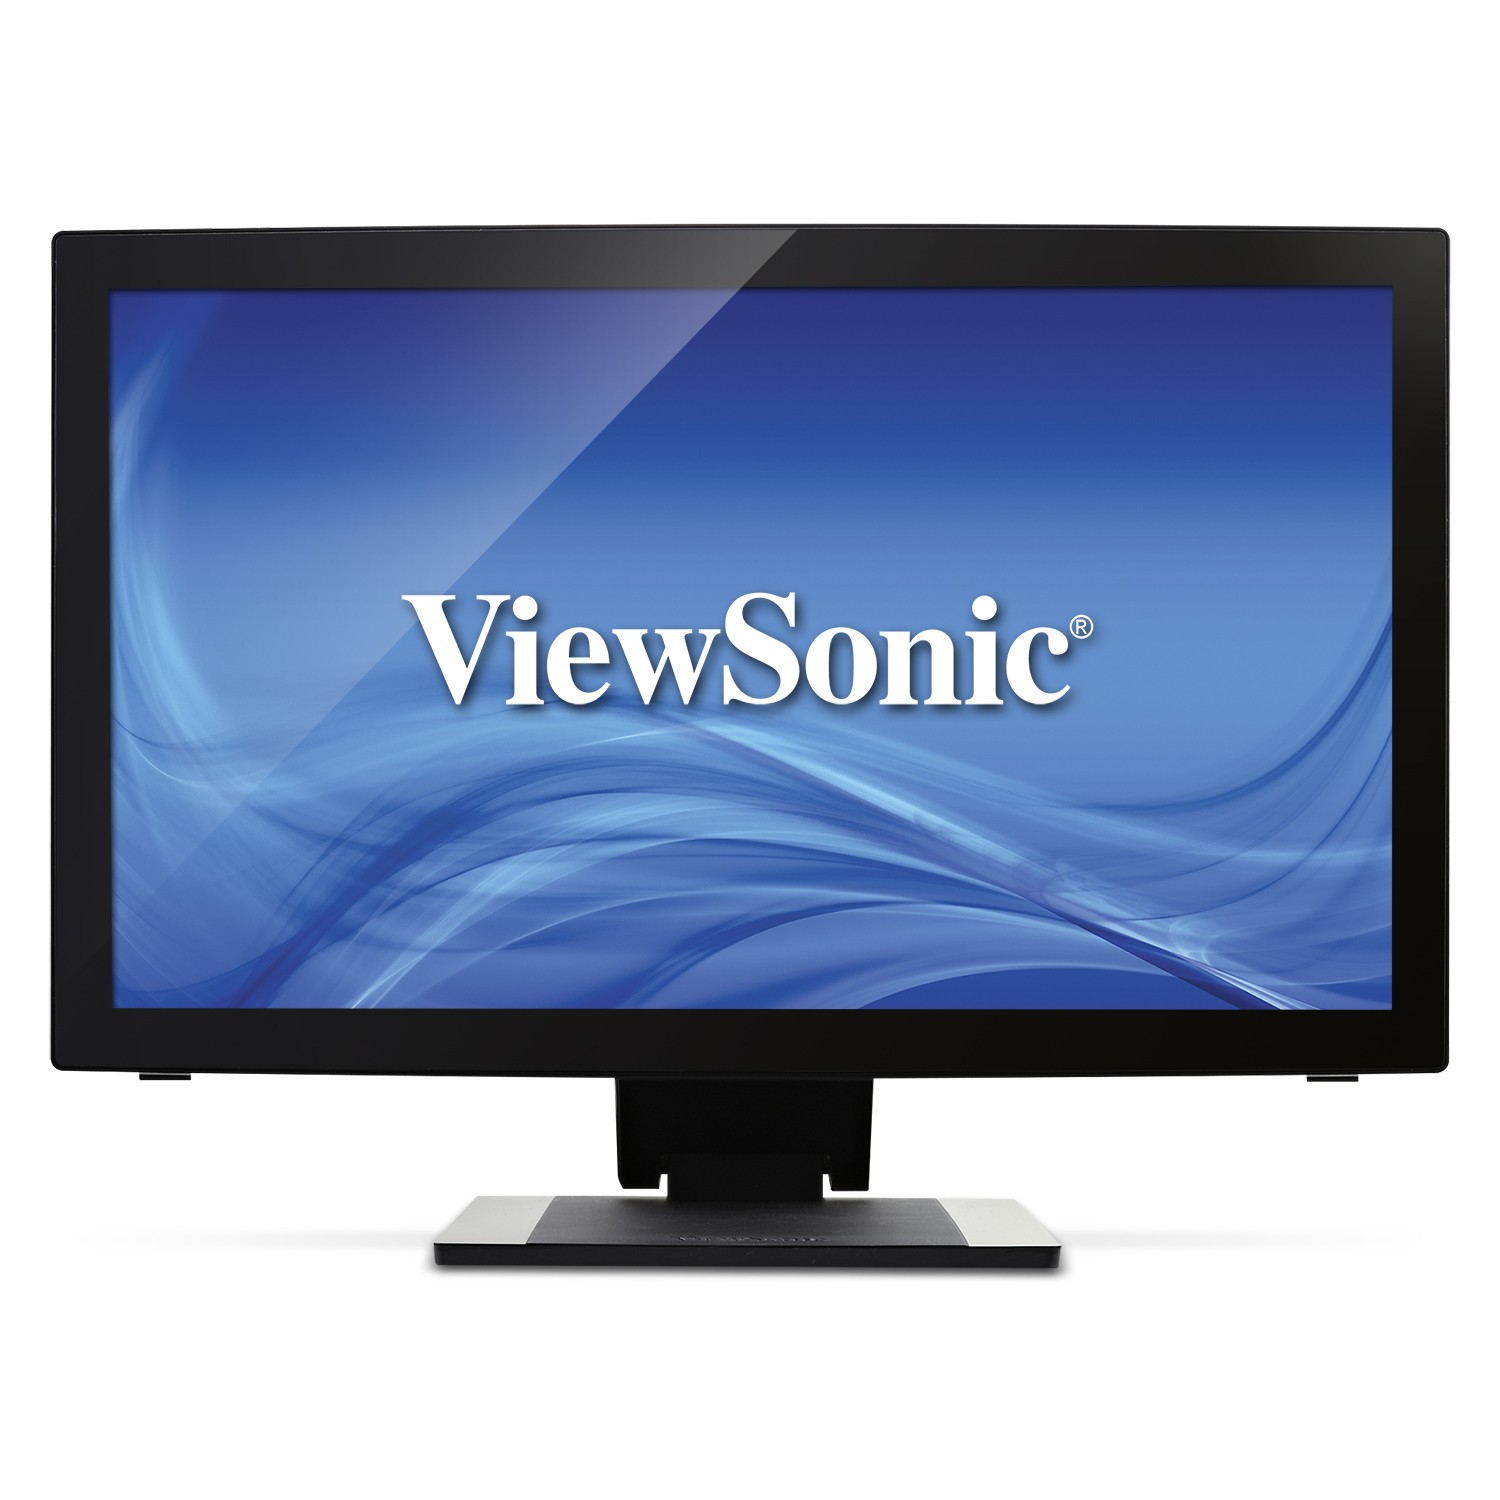 Immagine pubblicata in relazione al seguente contenuto: ViewSonic annuncia il monitor multi-touch a 10 punti TD2240 | Nome immagine: news20782_ViewSonic-TD2240_1.jpg